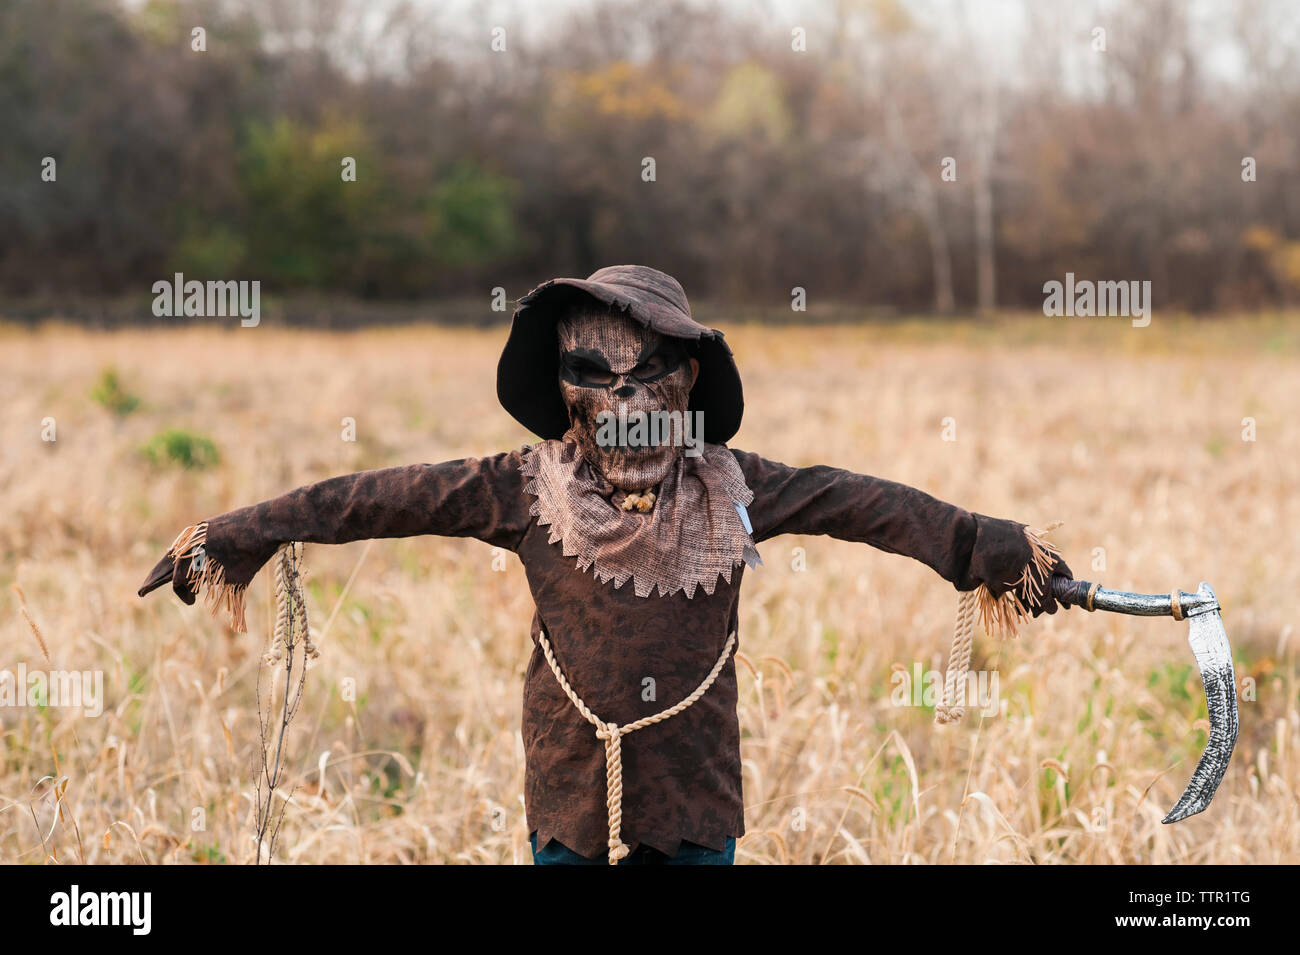 Junge gekleidet in spooky Vogelscheuche halloween kostüm steht im Feld Stockfoto